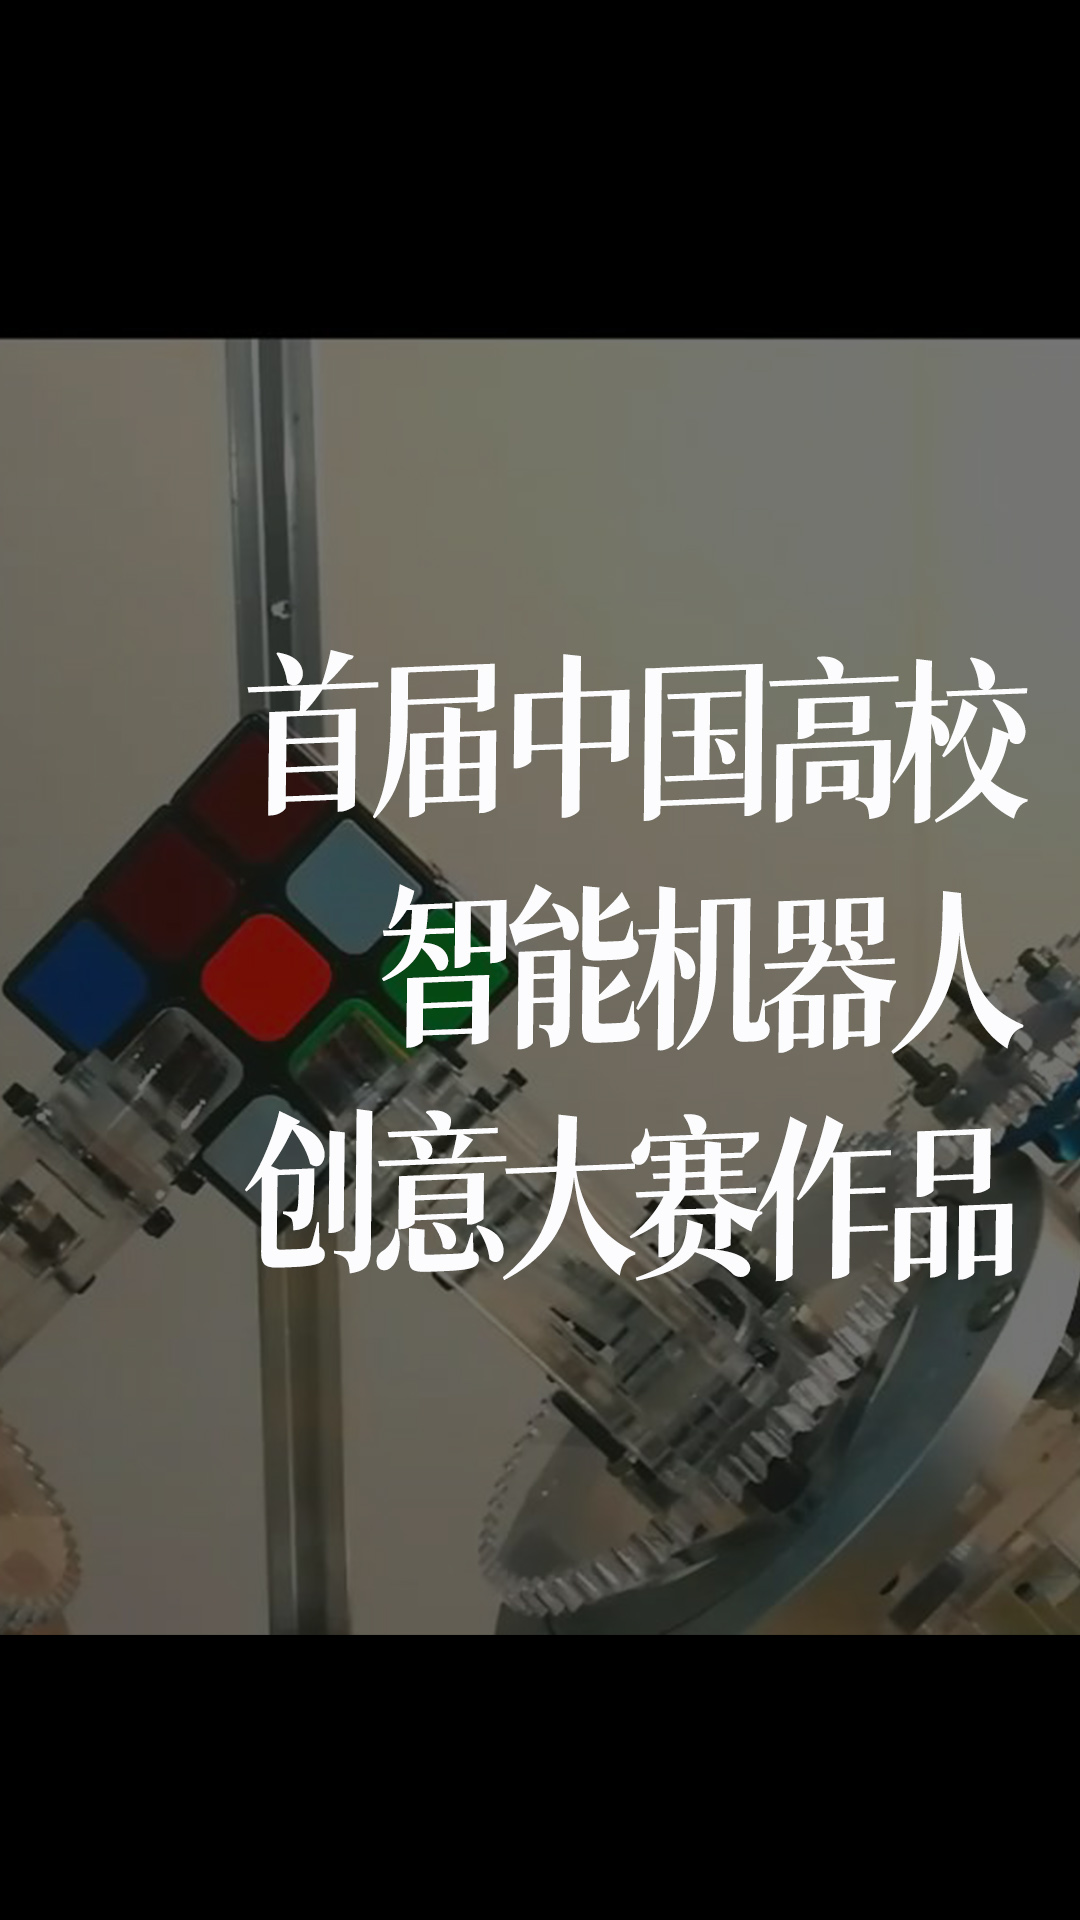 首届中国高校智能机器人创意大赛作品#跟着UP主一起创作吧 #造物大赏 